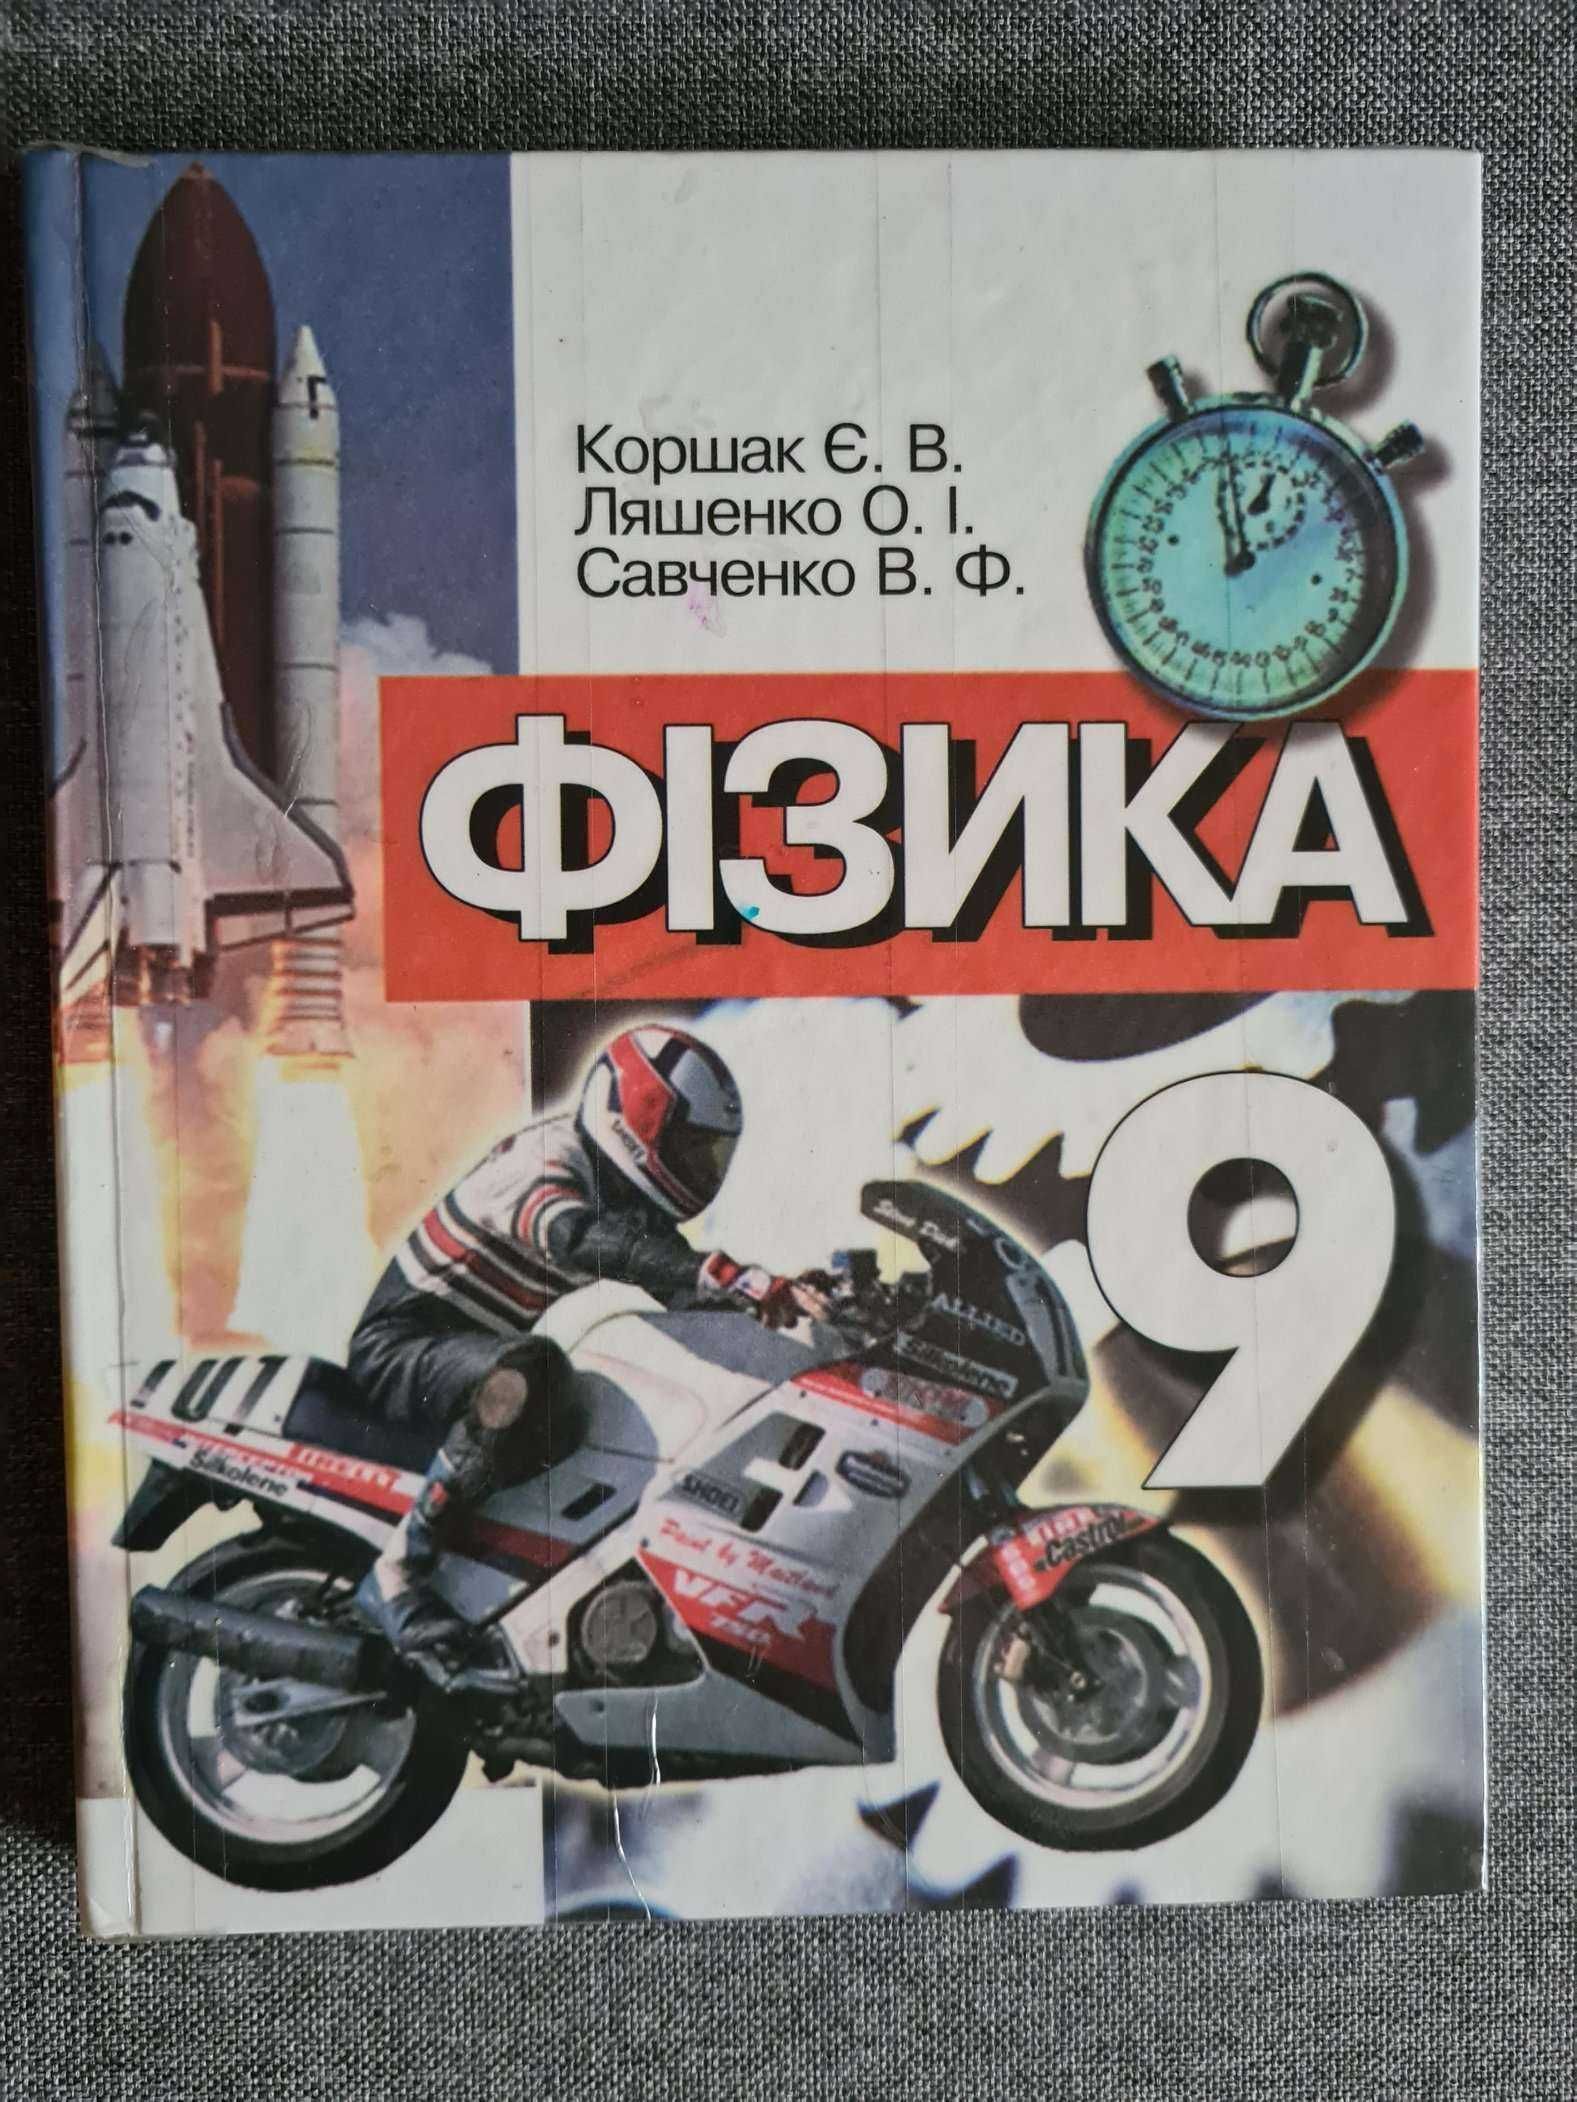 Коршак, Ляшенко, Савченко. Фізика 9клас. 2-е видання, 2004рік